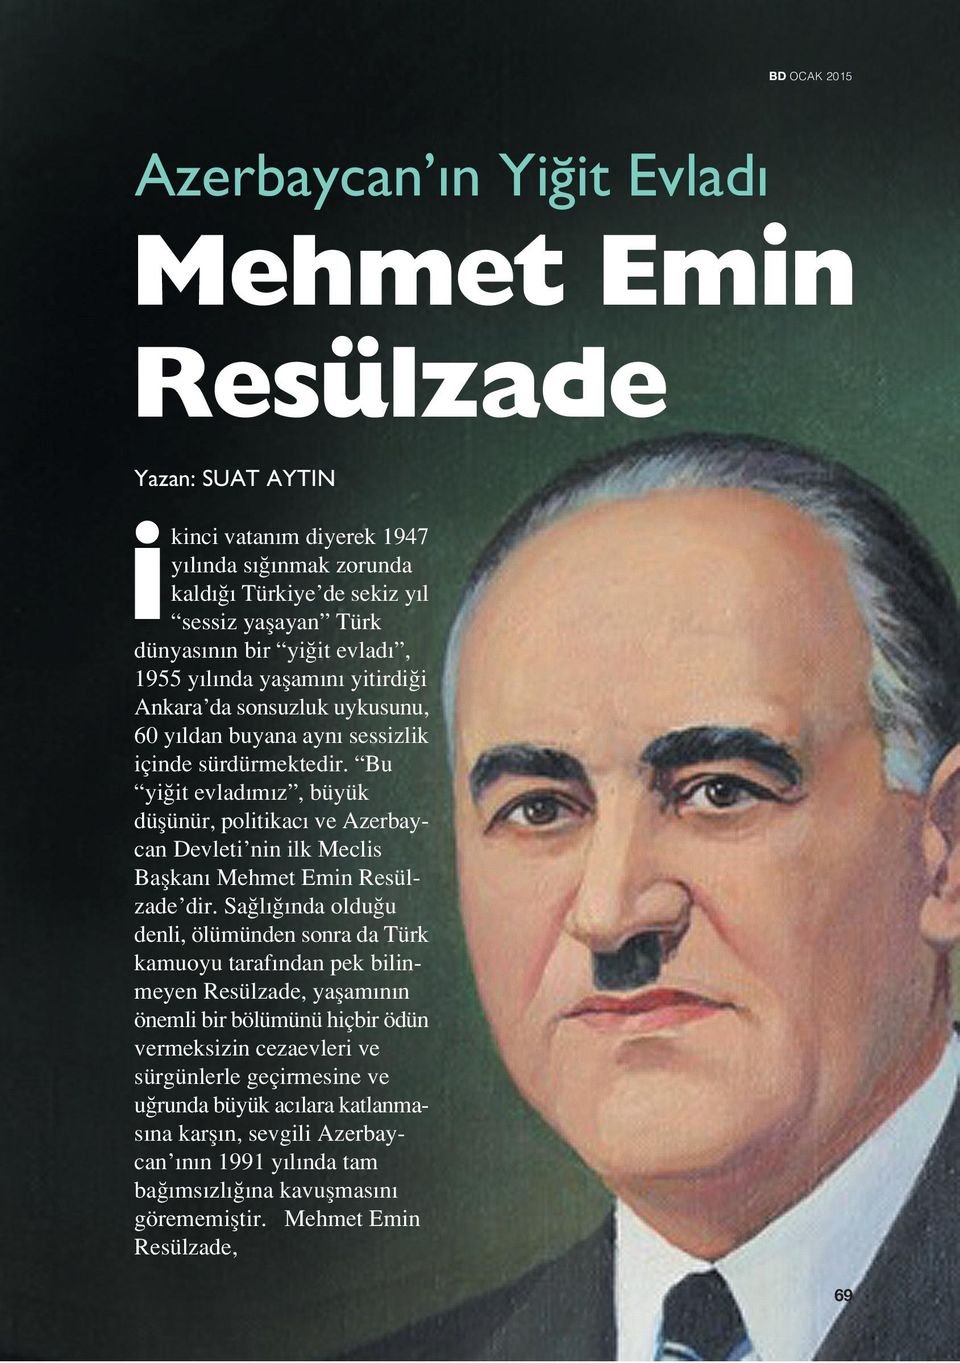 Bu yi it evlad m z, büyük düflünür, politikac ve Azerbaycan Devleti nin ilk Meclis Baflkan Mehmet Emin Resülzade dir.